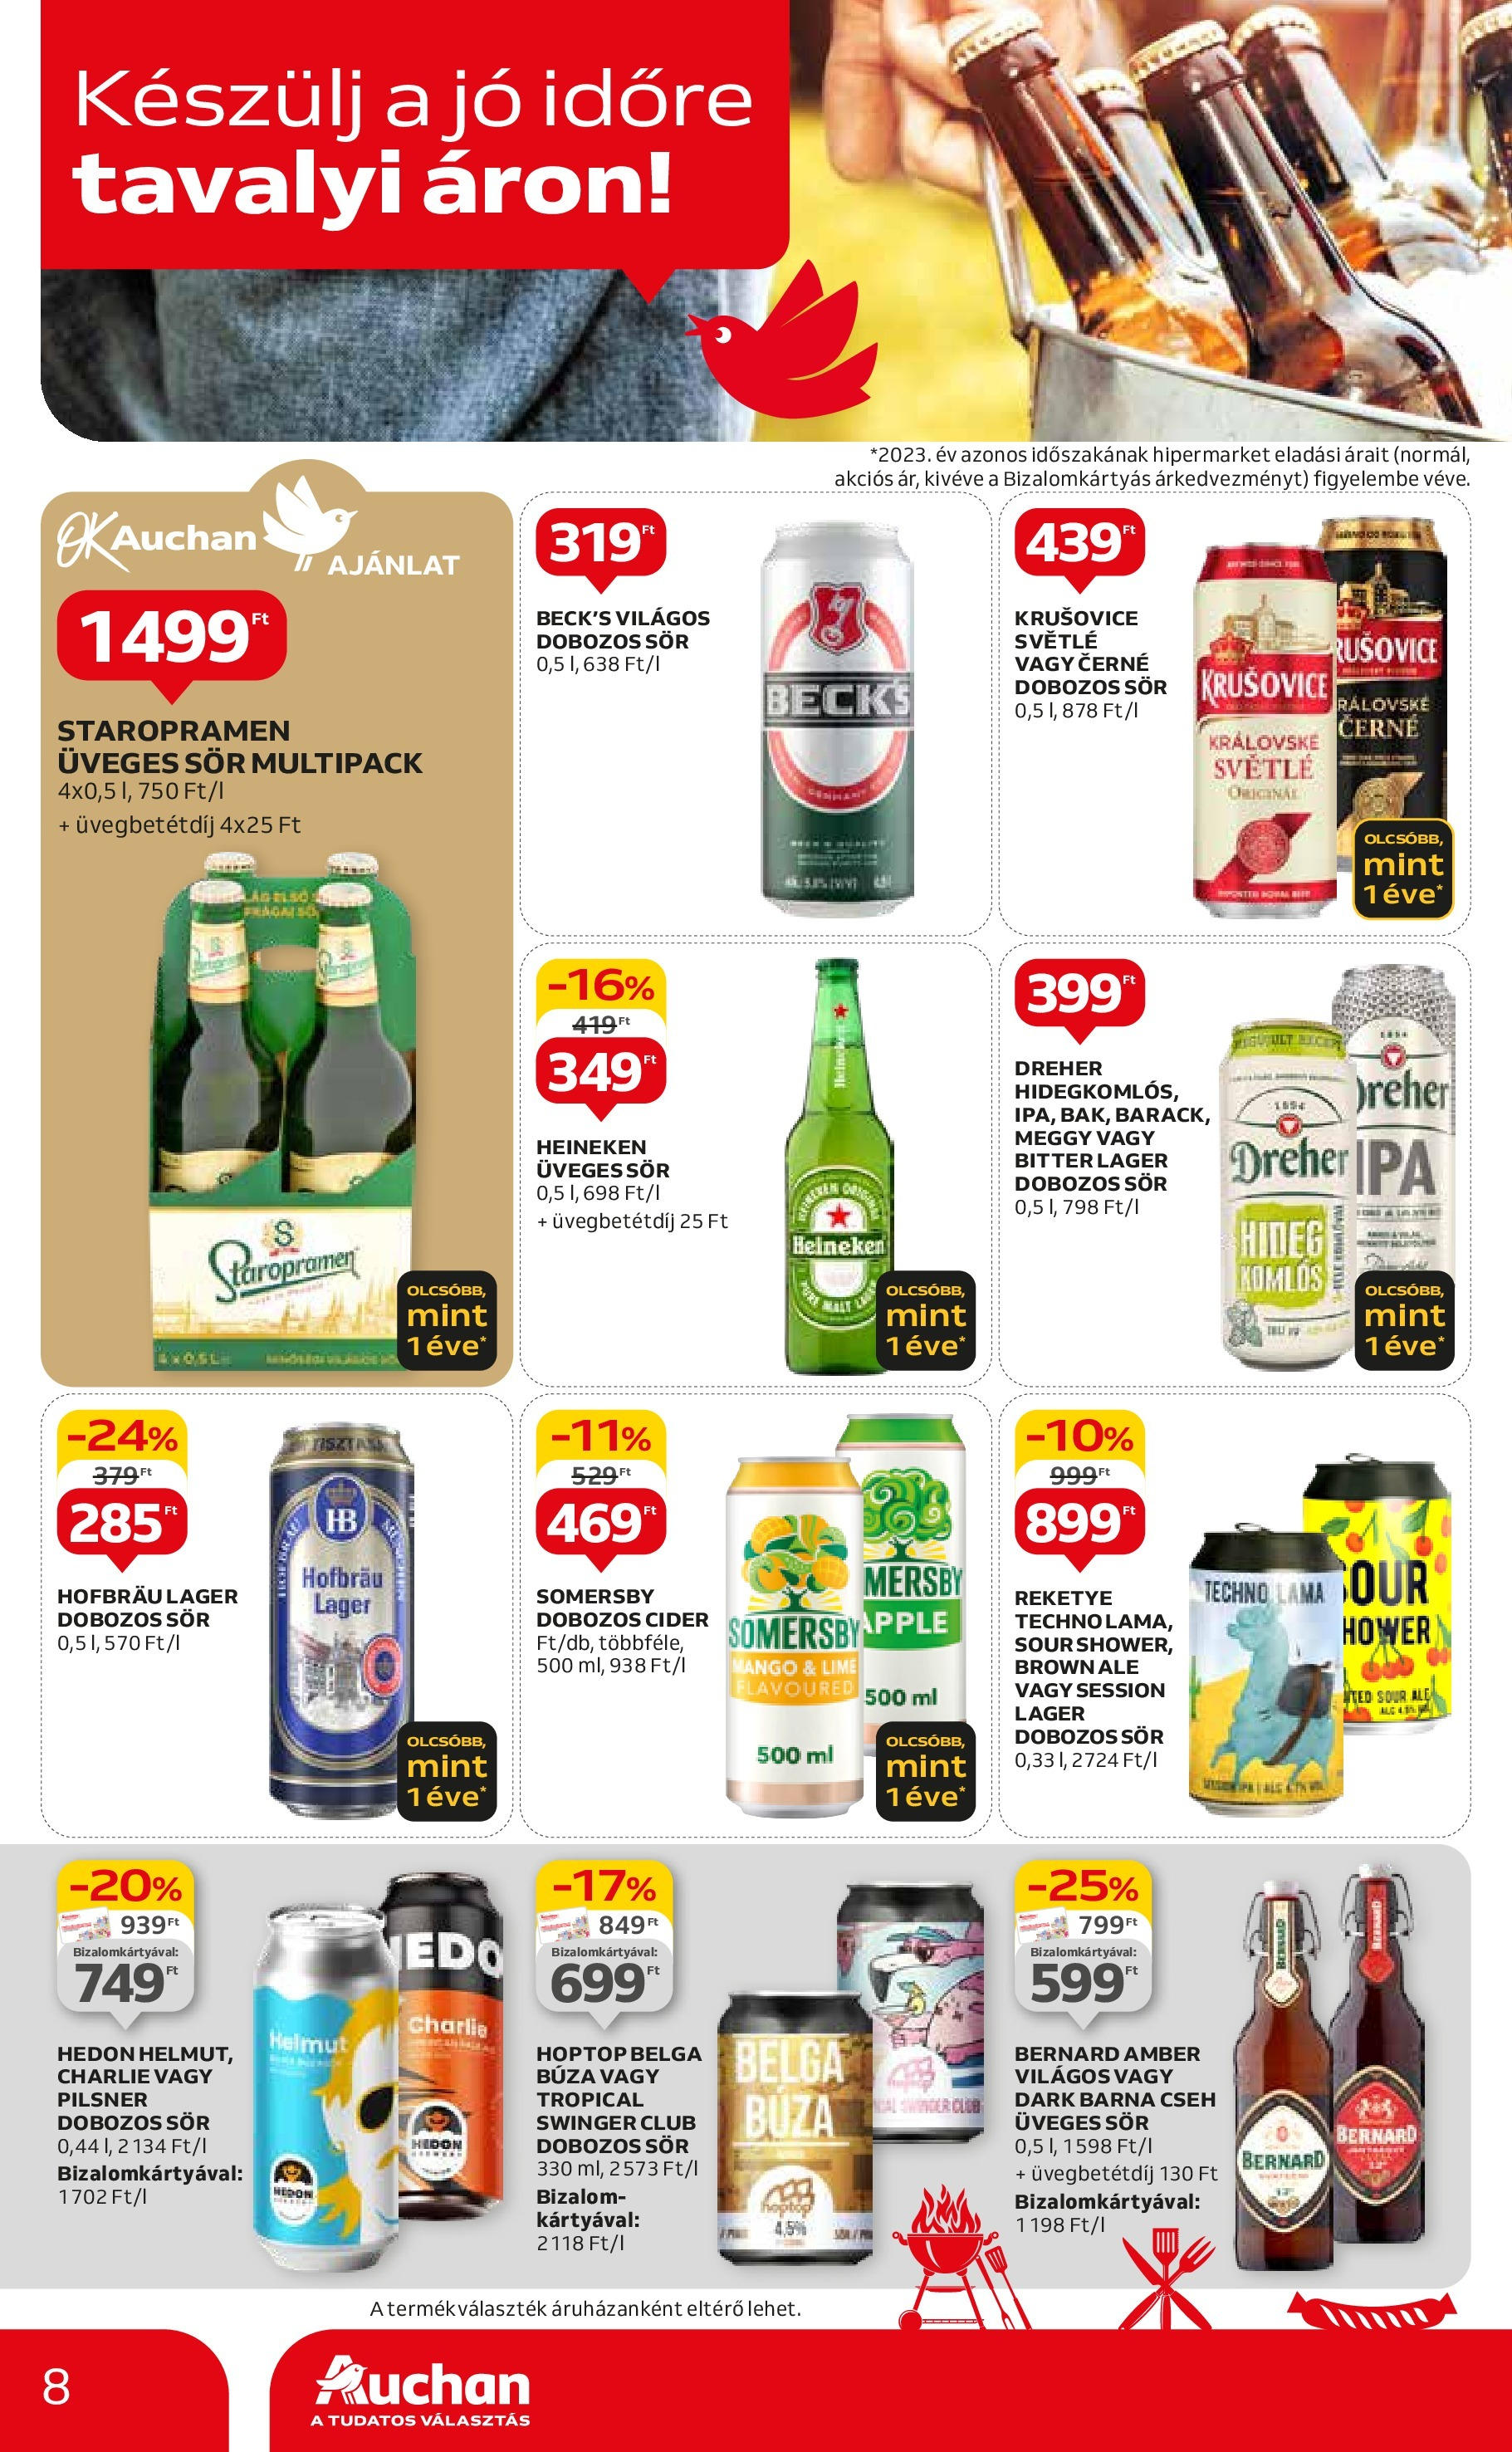 Auchan  Akciós újság - 2024.04.25. -tól/töl > akció, szórólap 🛍️ | Oldal: 8 | Termékek: Cider, Krusovice, Sör, Mangó